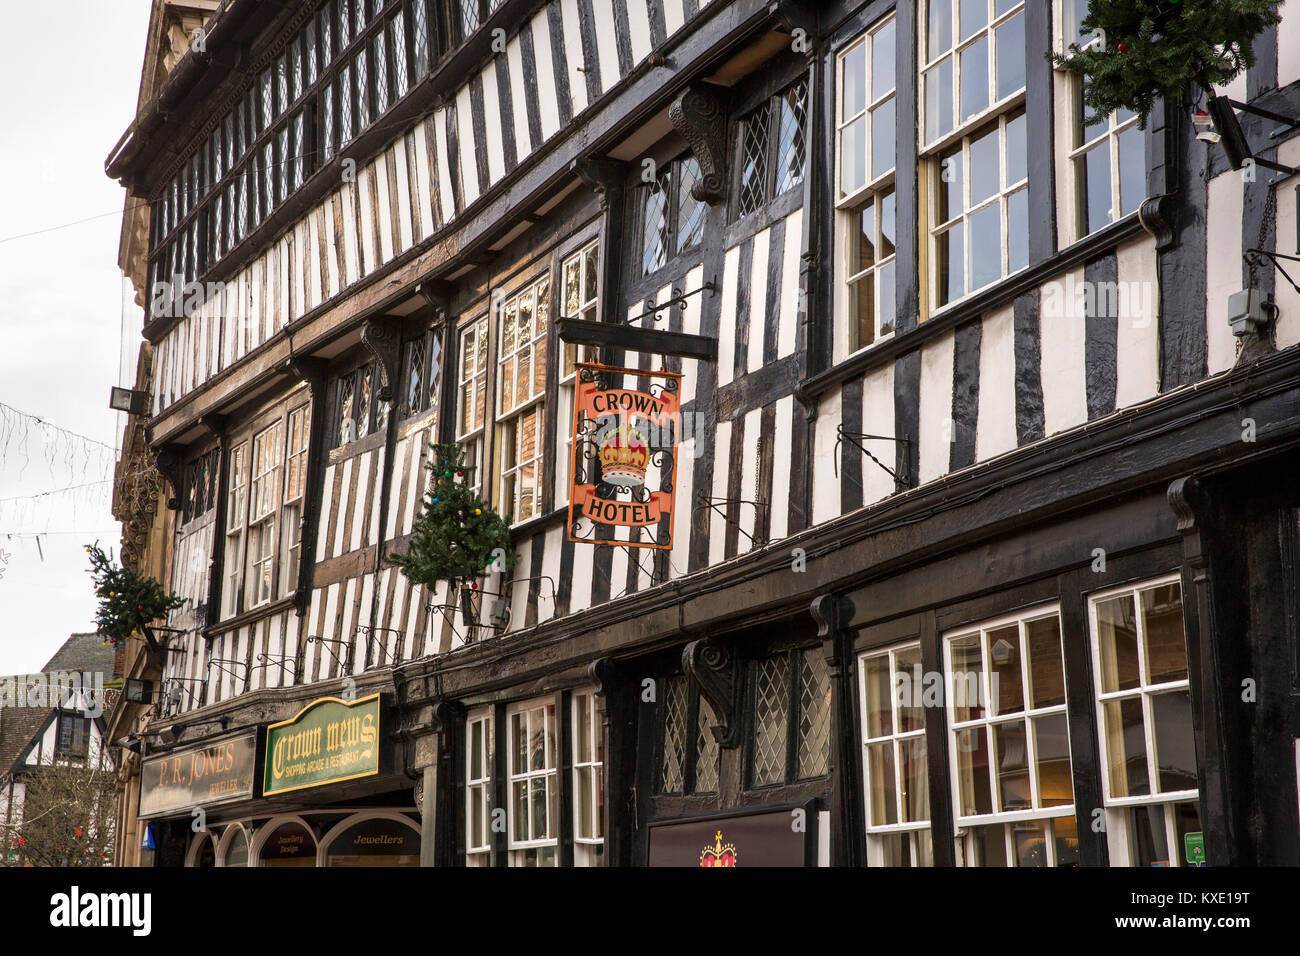 Royaume-uni, Angleterre, Cheshire, Nantwich, High Street, l'Hôtel de la Couronne, charpente en bois de 1583 public house Banque D'Images